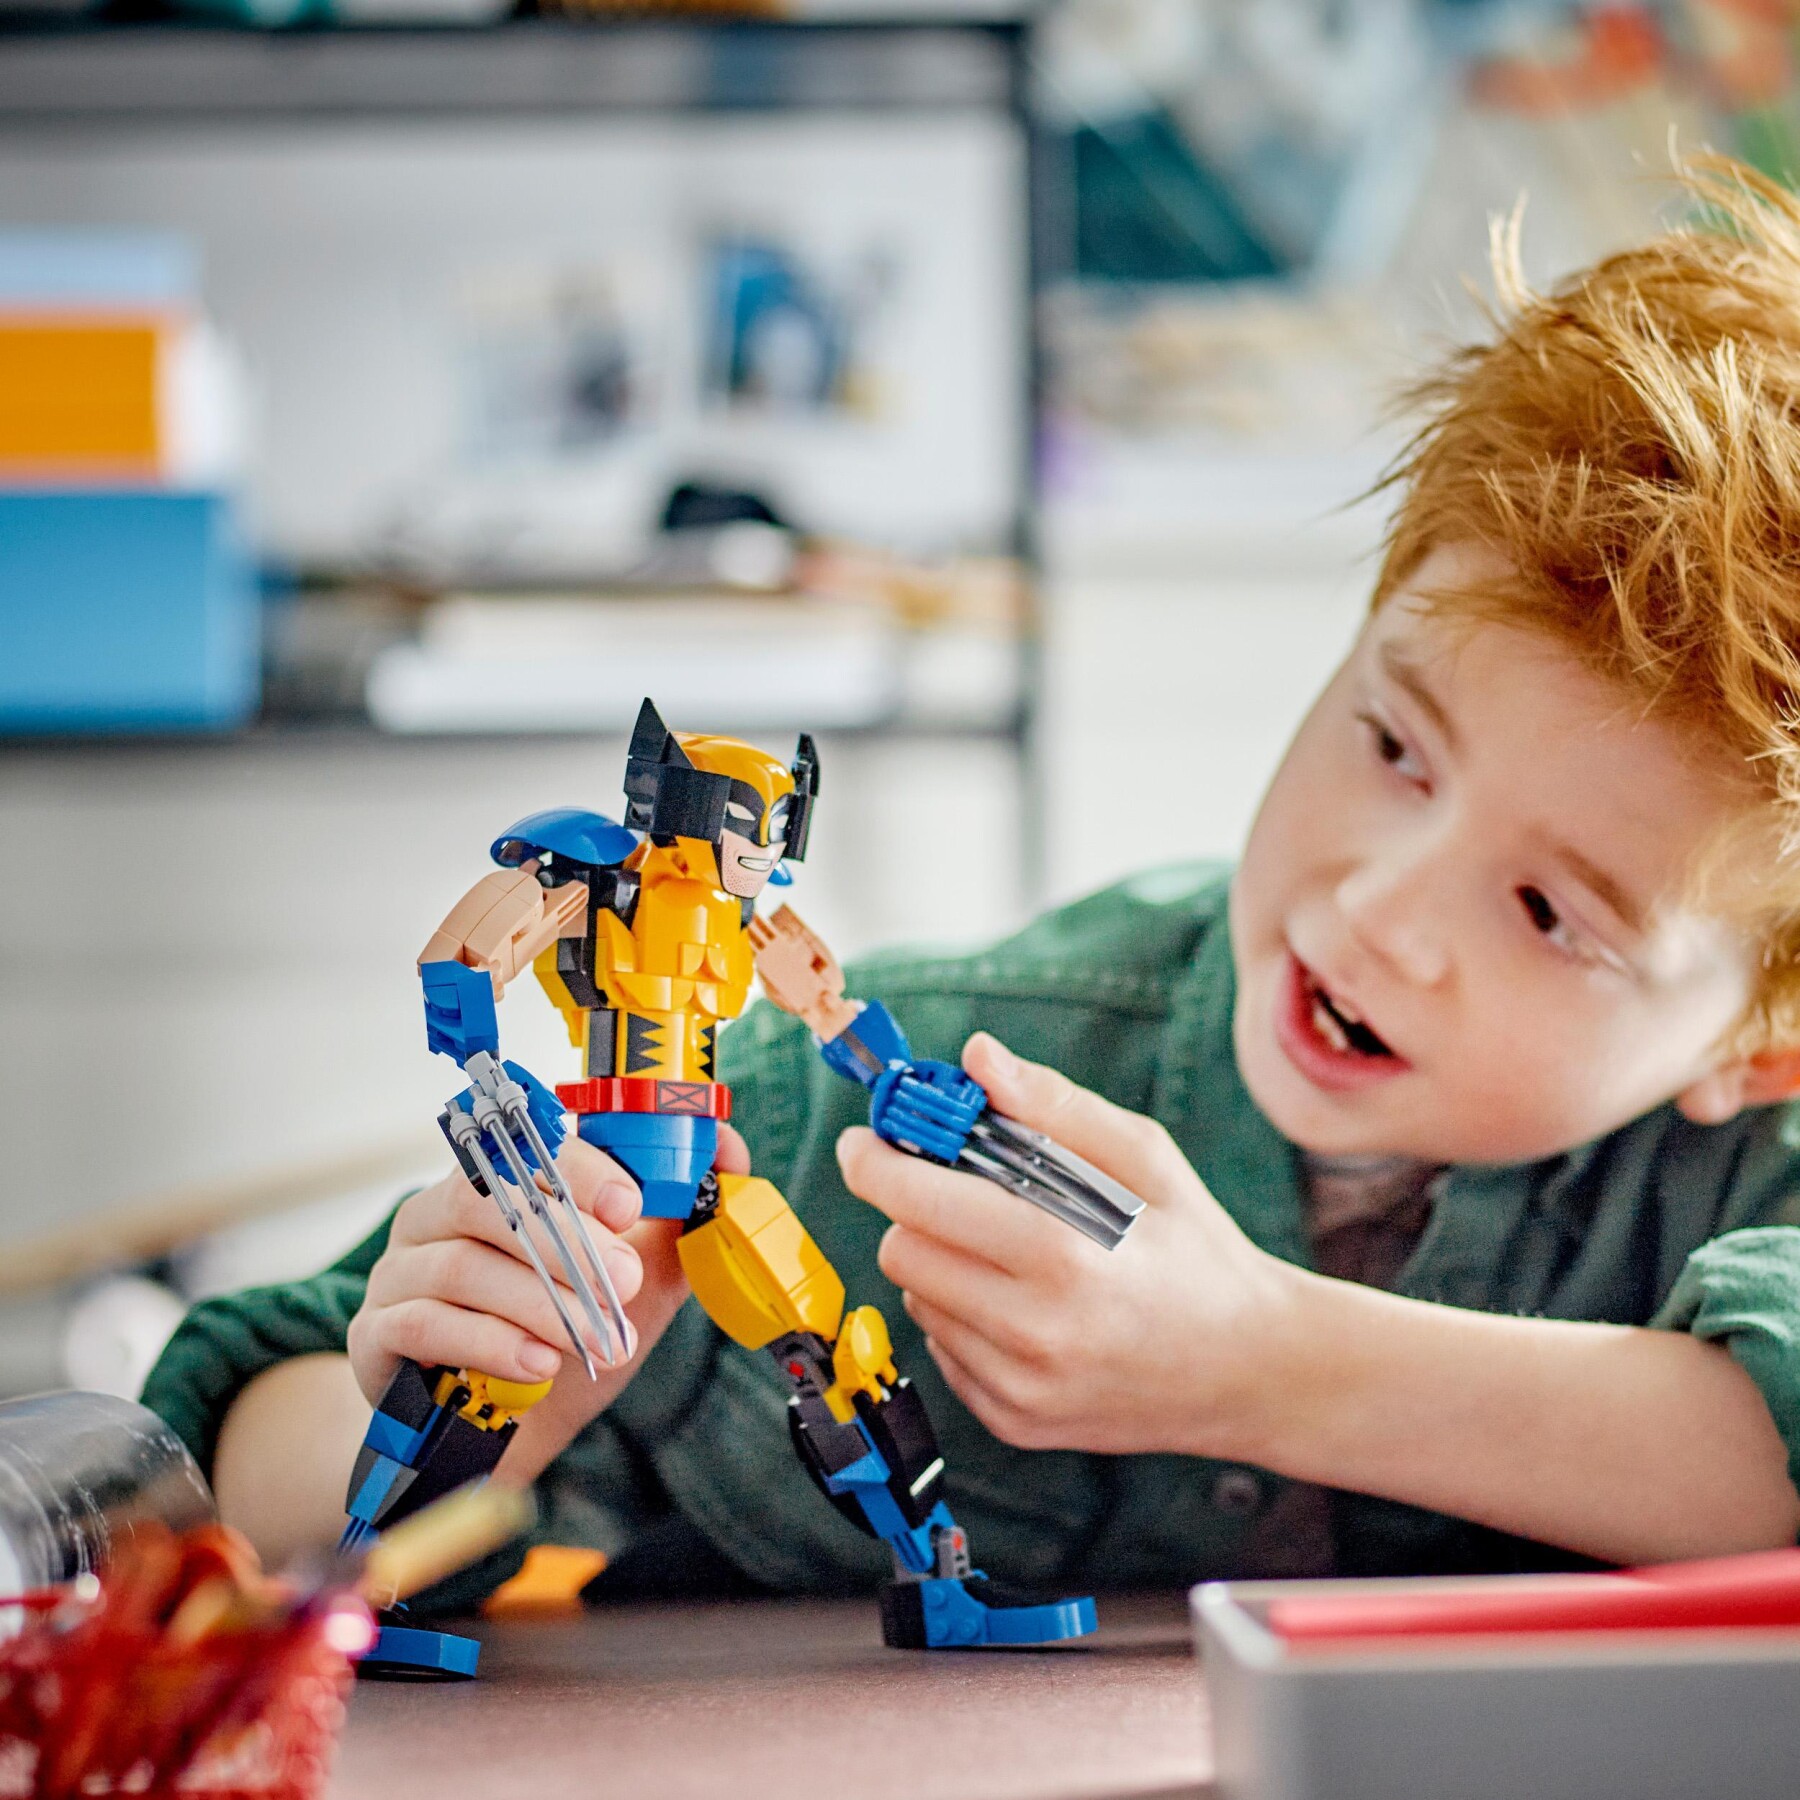 Lego marvel 76257 personaggio di wolverine, action figure costruibile degli x-men con 6 elementi artiglio, collezione supereroi - LEGO SUPER HEROES